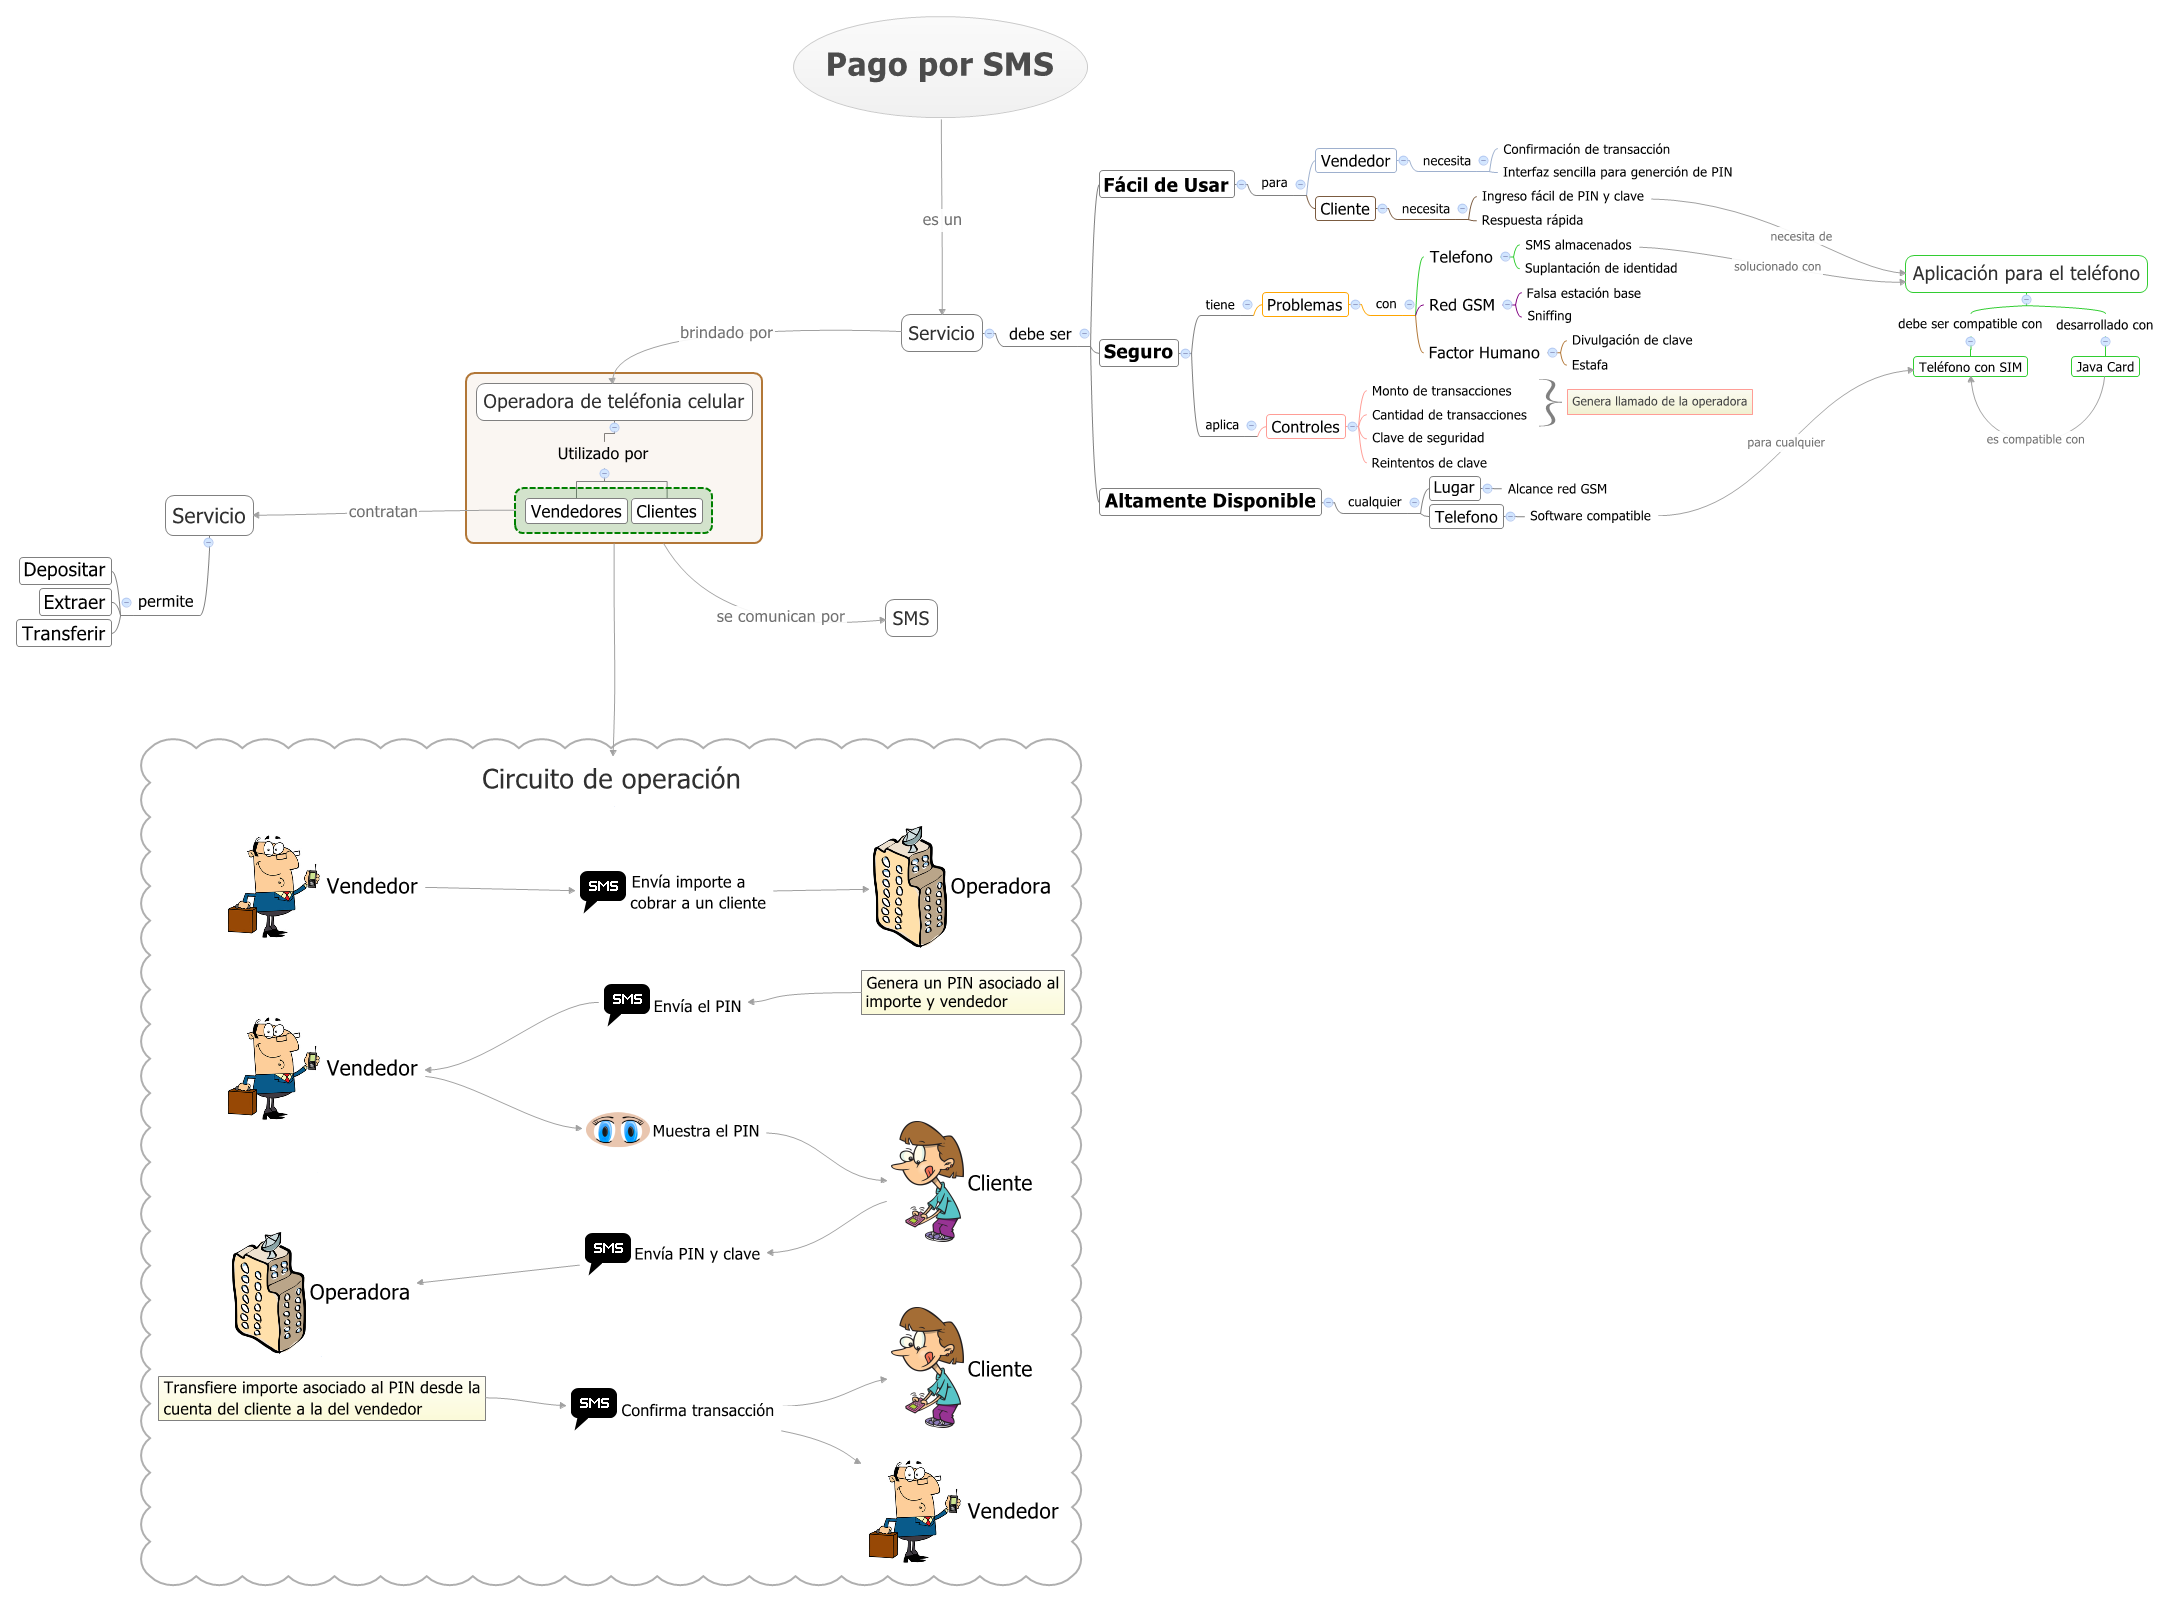 Diagrama del funcionamiento de Pago por SMS